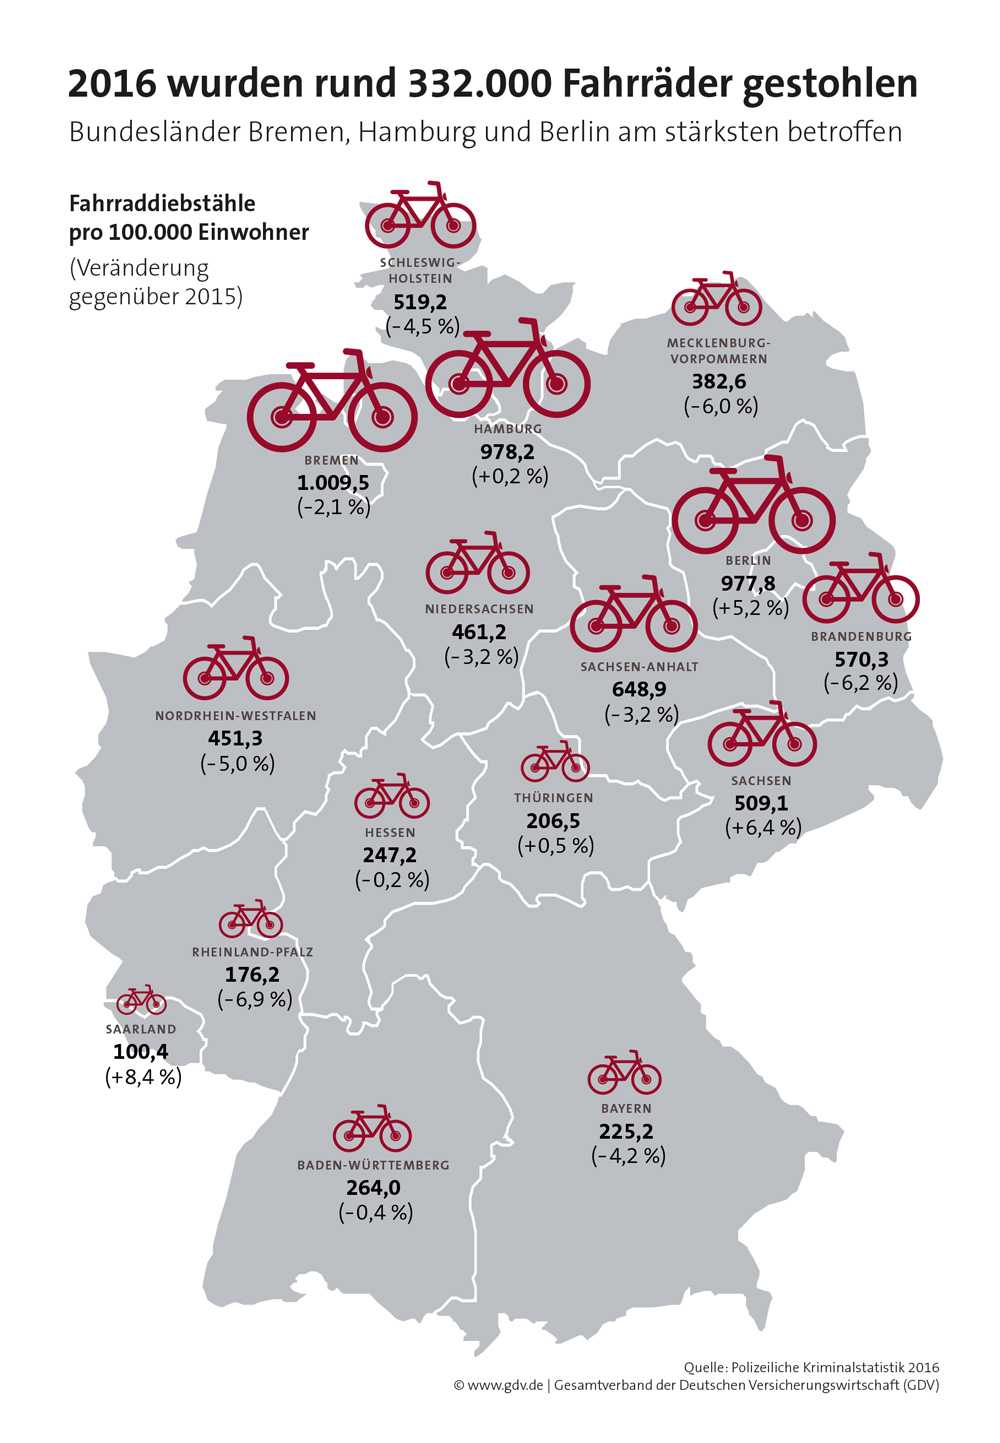 Grafik des GDV: Fahrraddiebstahl in Deutschland